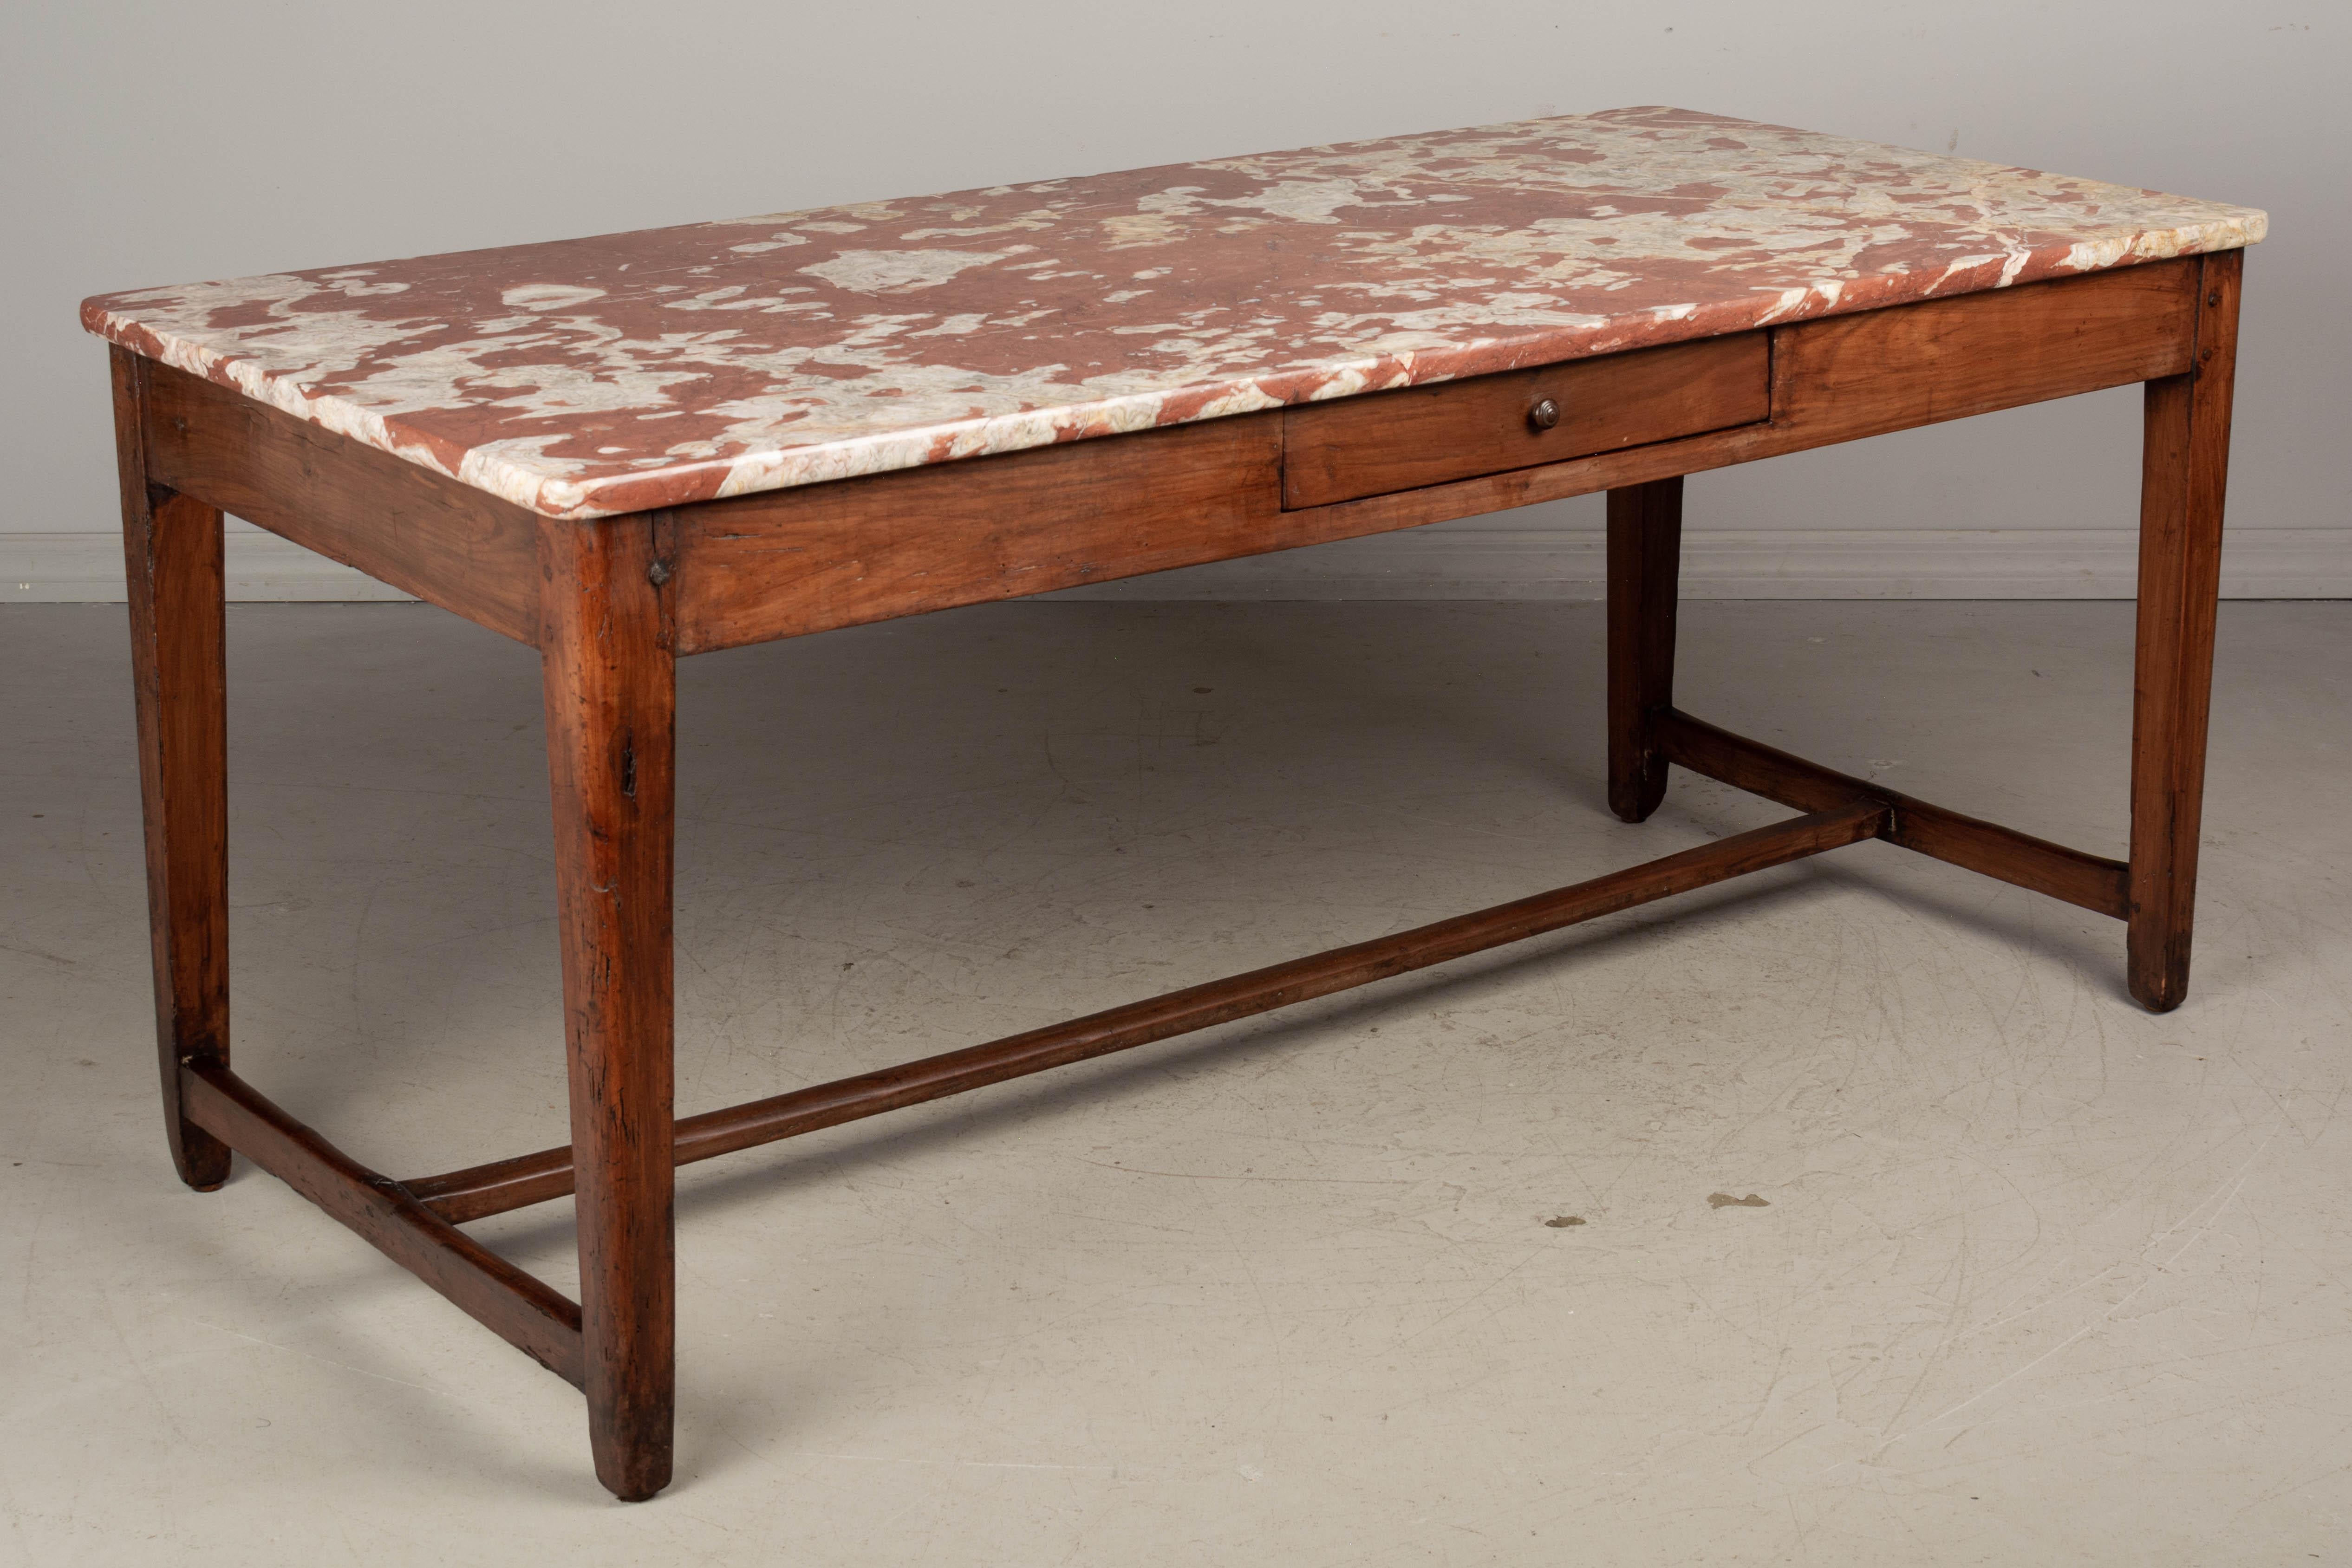 Ein französischer Tisch aus dem 19. Jahrhundert aus massivem Kirschbaumholz mit schöner Marmorplatte Rouge Royale. Stabile Zapfenkonstruktion mit verjüngten Beinen und Läufern. Zwei schwalbenschwanzförmige Schubladen mit unterteiltem Innenraum.